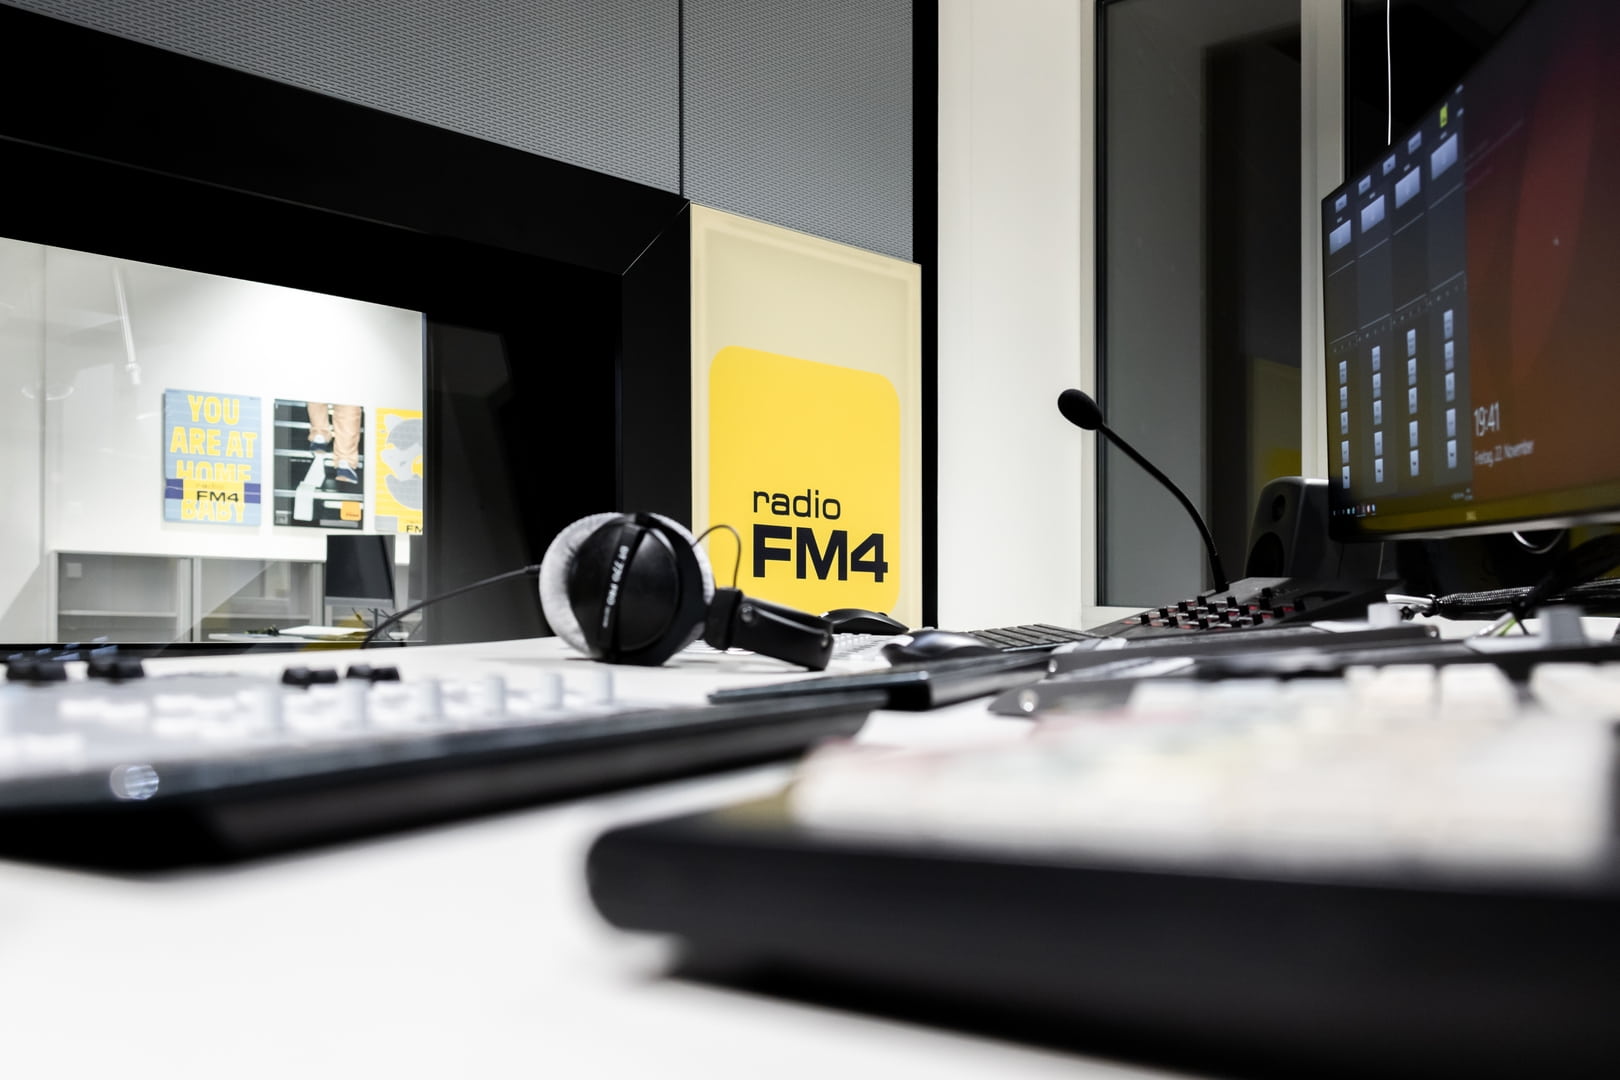 Thum + Mahr réussit l'intégration de la radio FM4